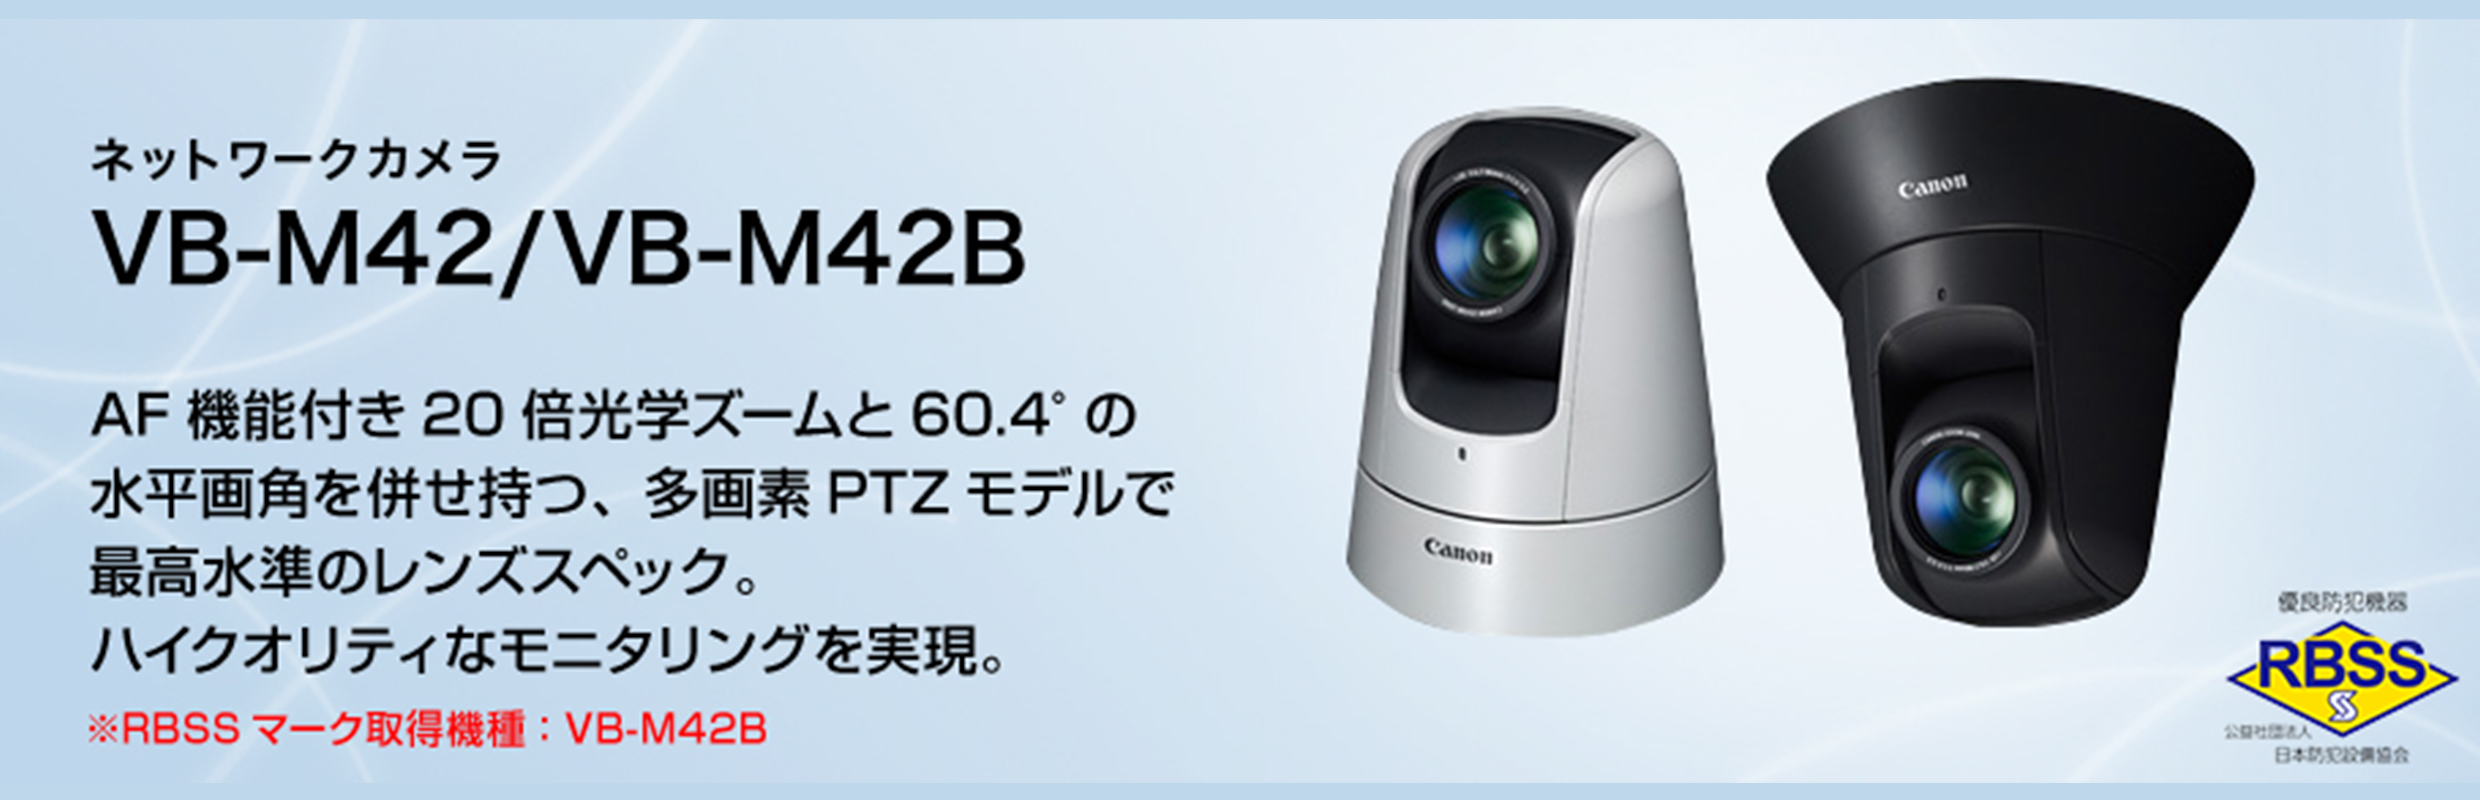 R006 Canon キャノン 監視カメラ 機器 VB-M42 動作確認済み - 防犯カメラ